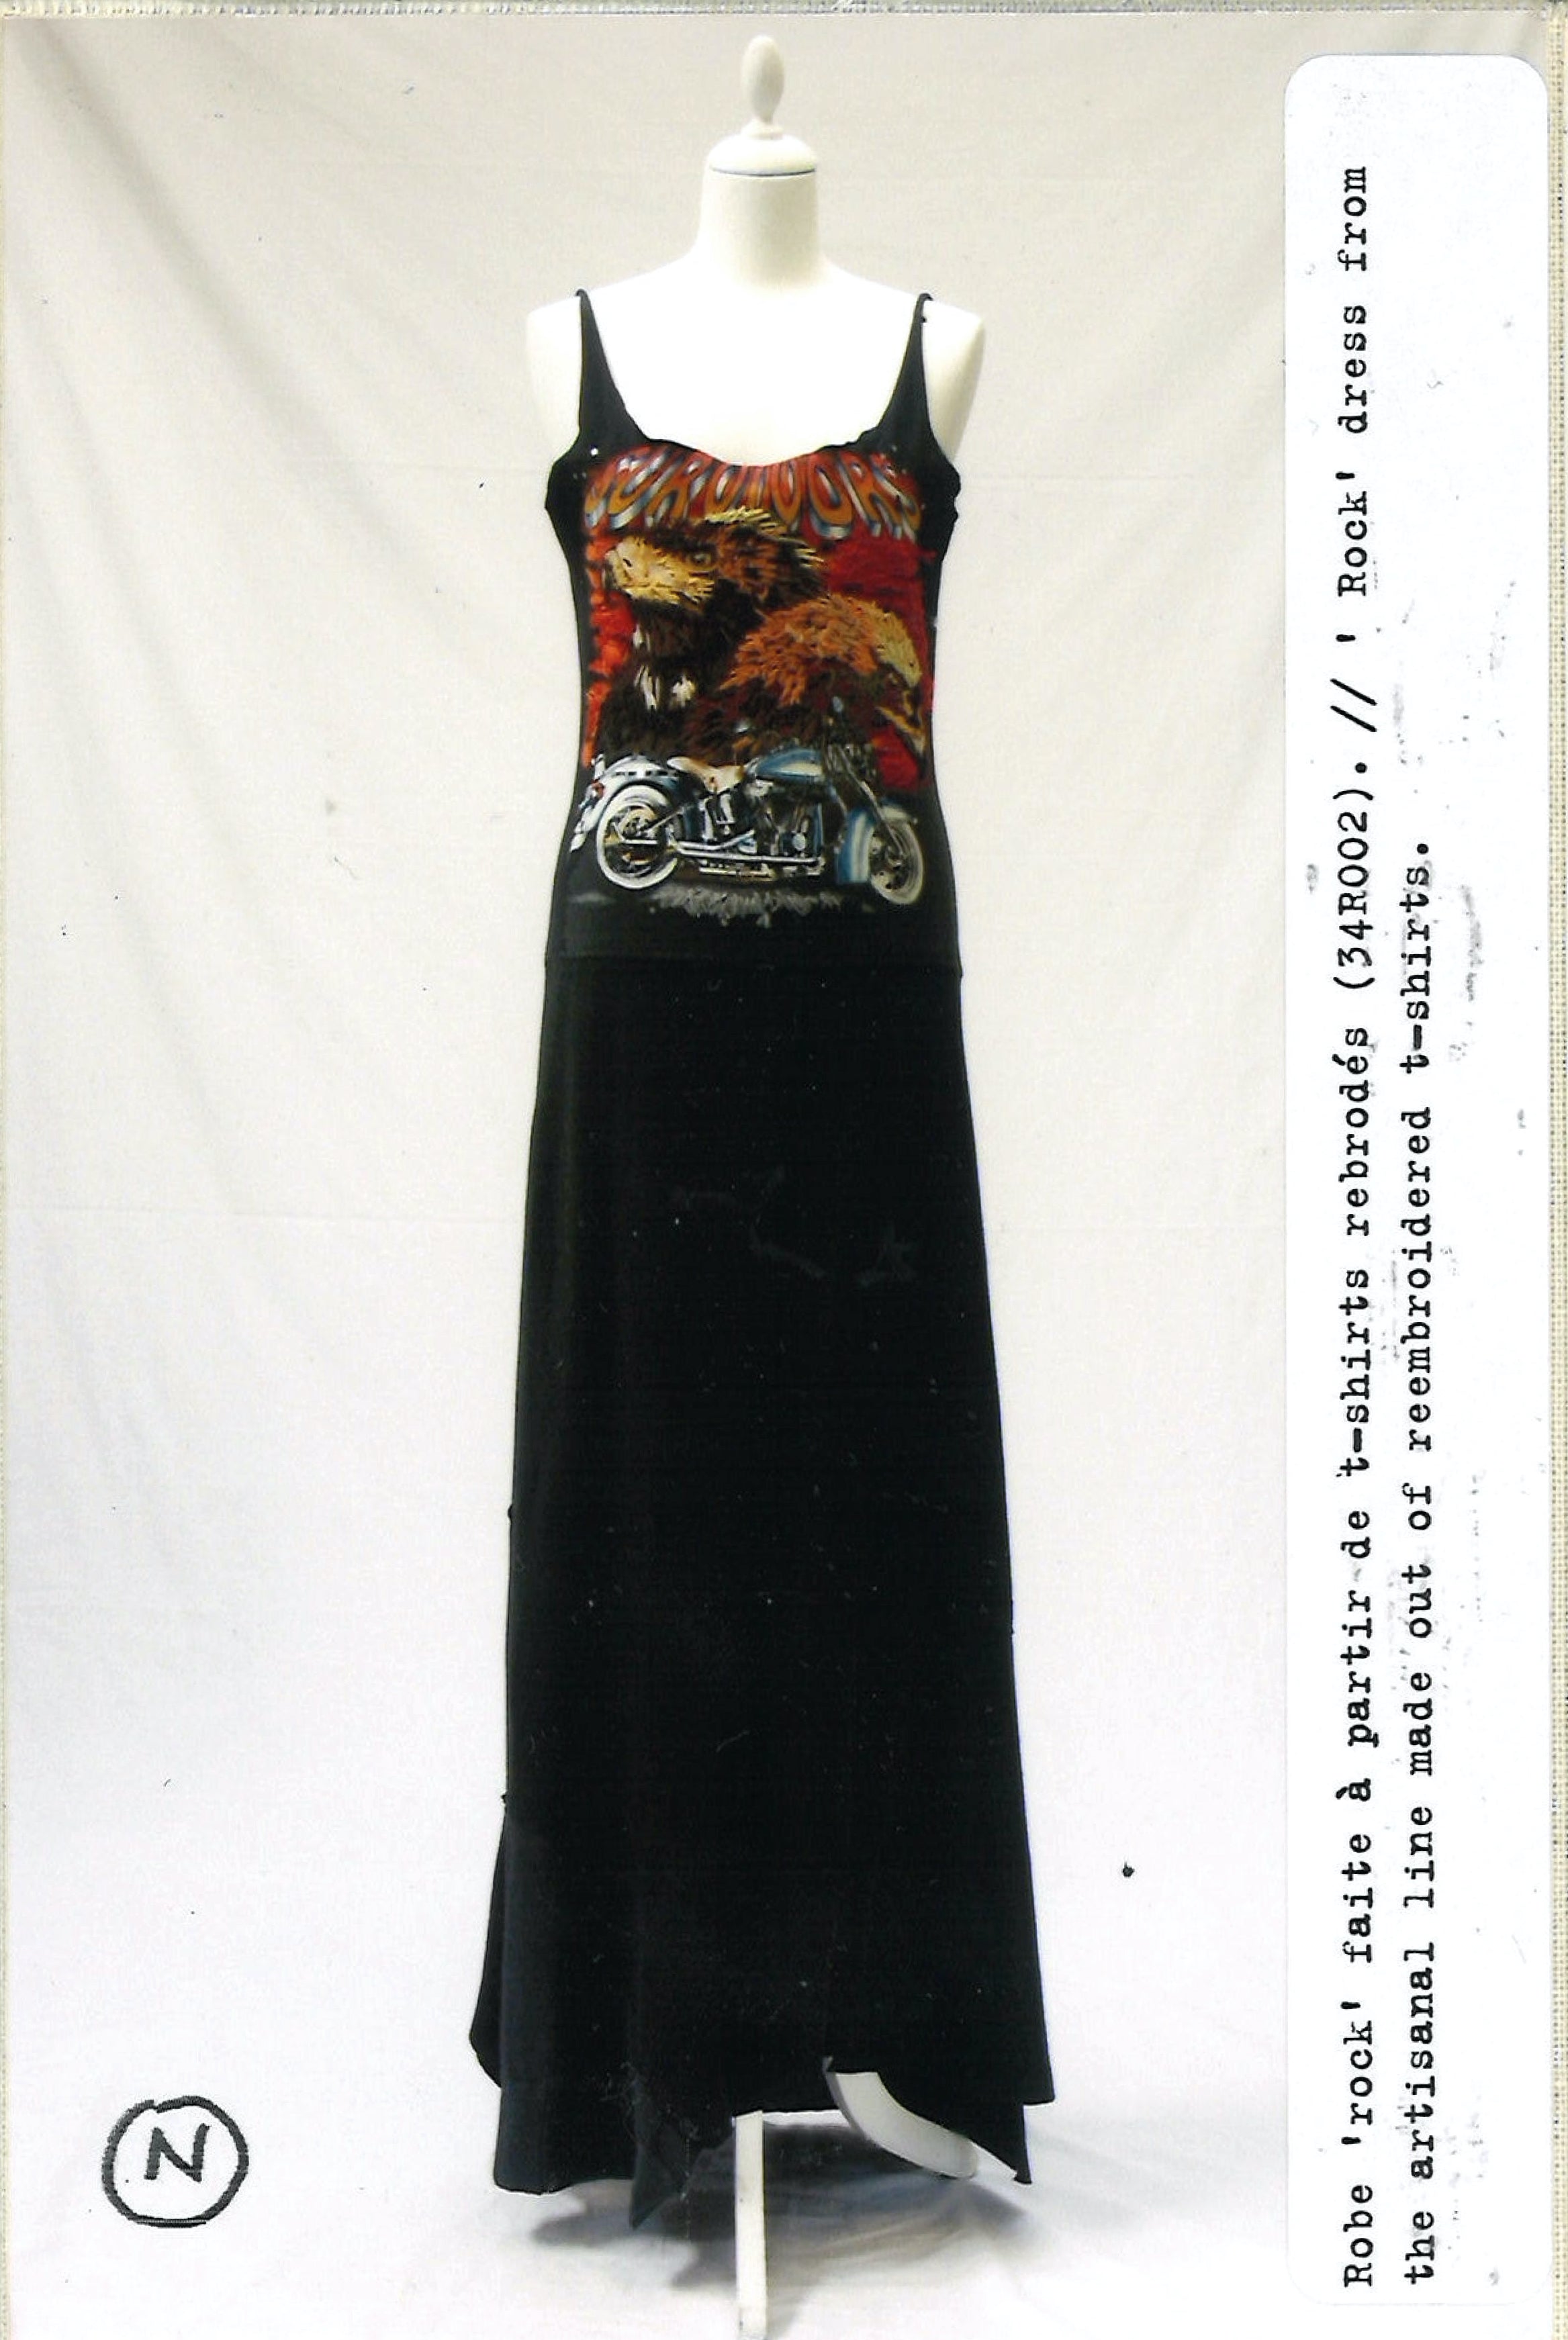 Maison Martin Margiela Lookbook
Womenswear Artisanal Collection Autumn/Winter 2005-06